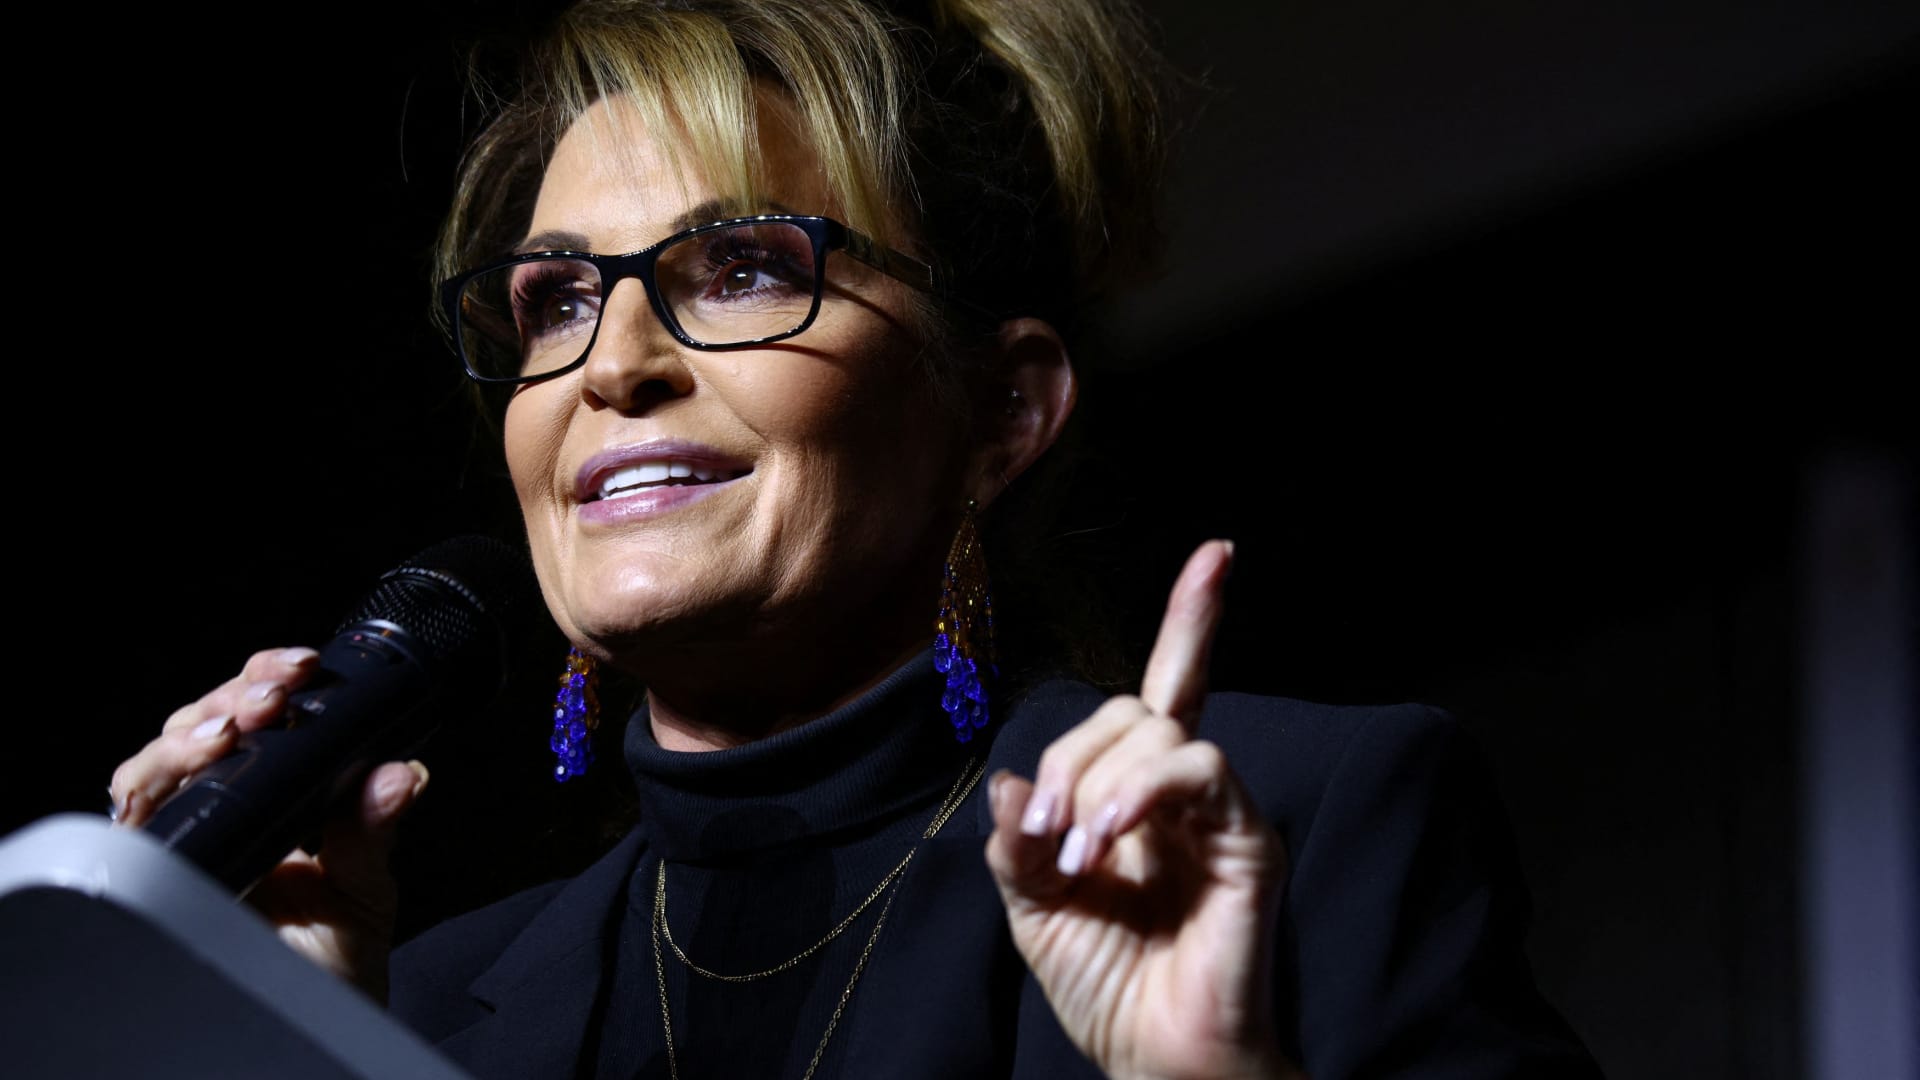 NBC News proyecta perder a Sarah Palin, poniendo fin a su regreso político